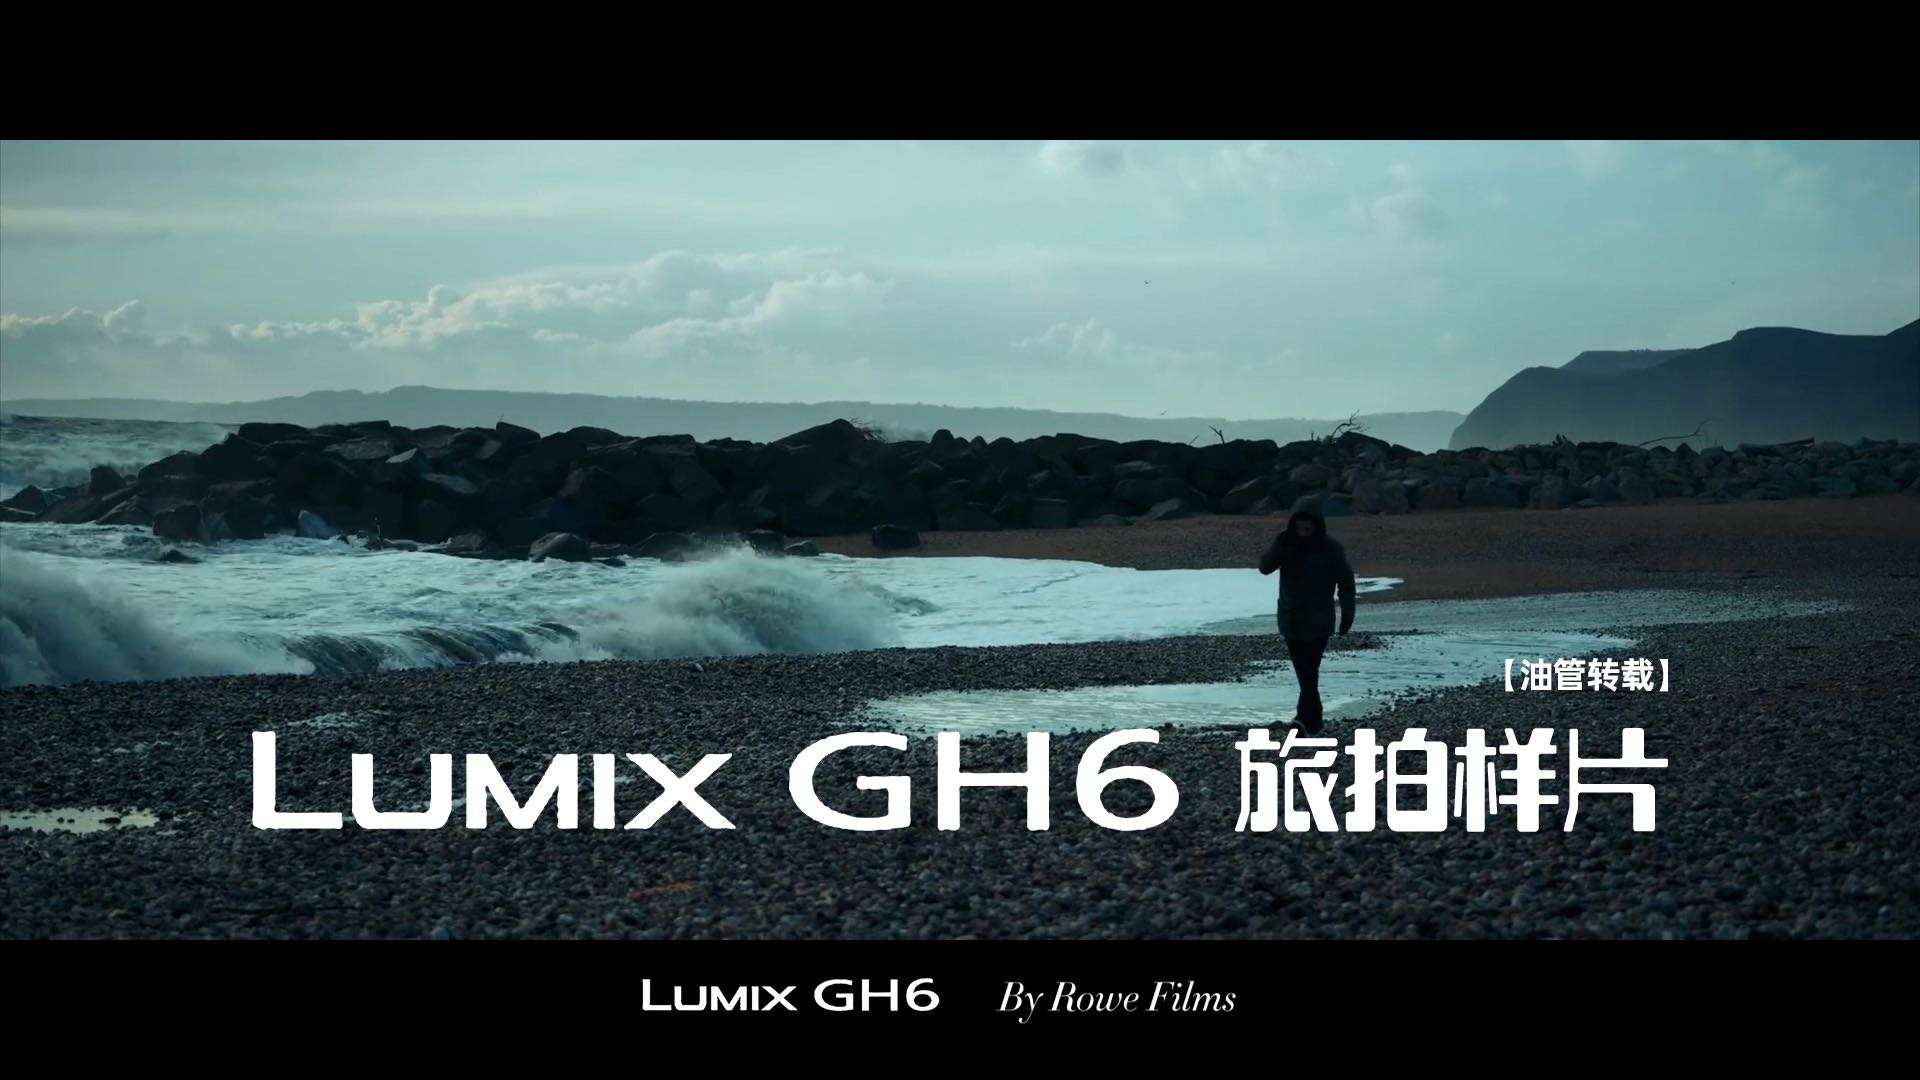 [油管转载]松下 LUMIX GH6旅拍1080P样片——THE STORM